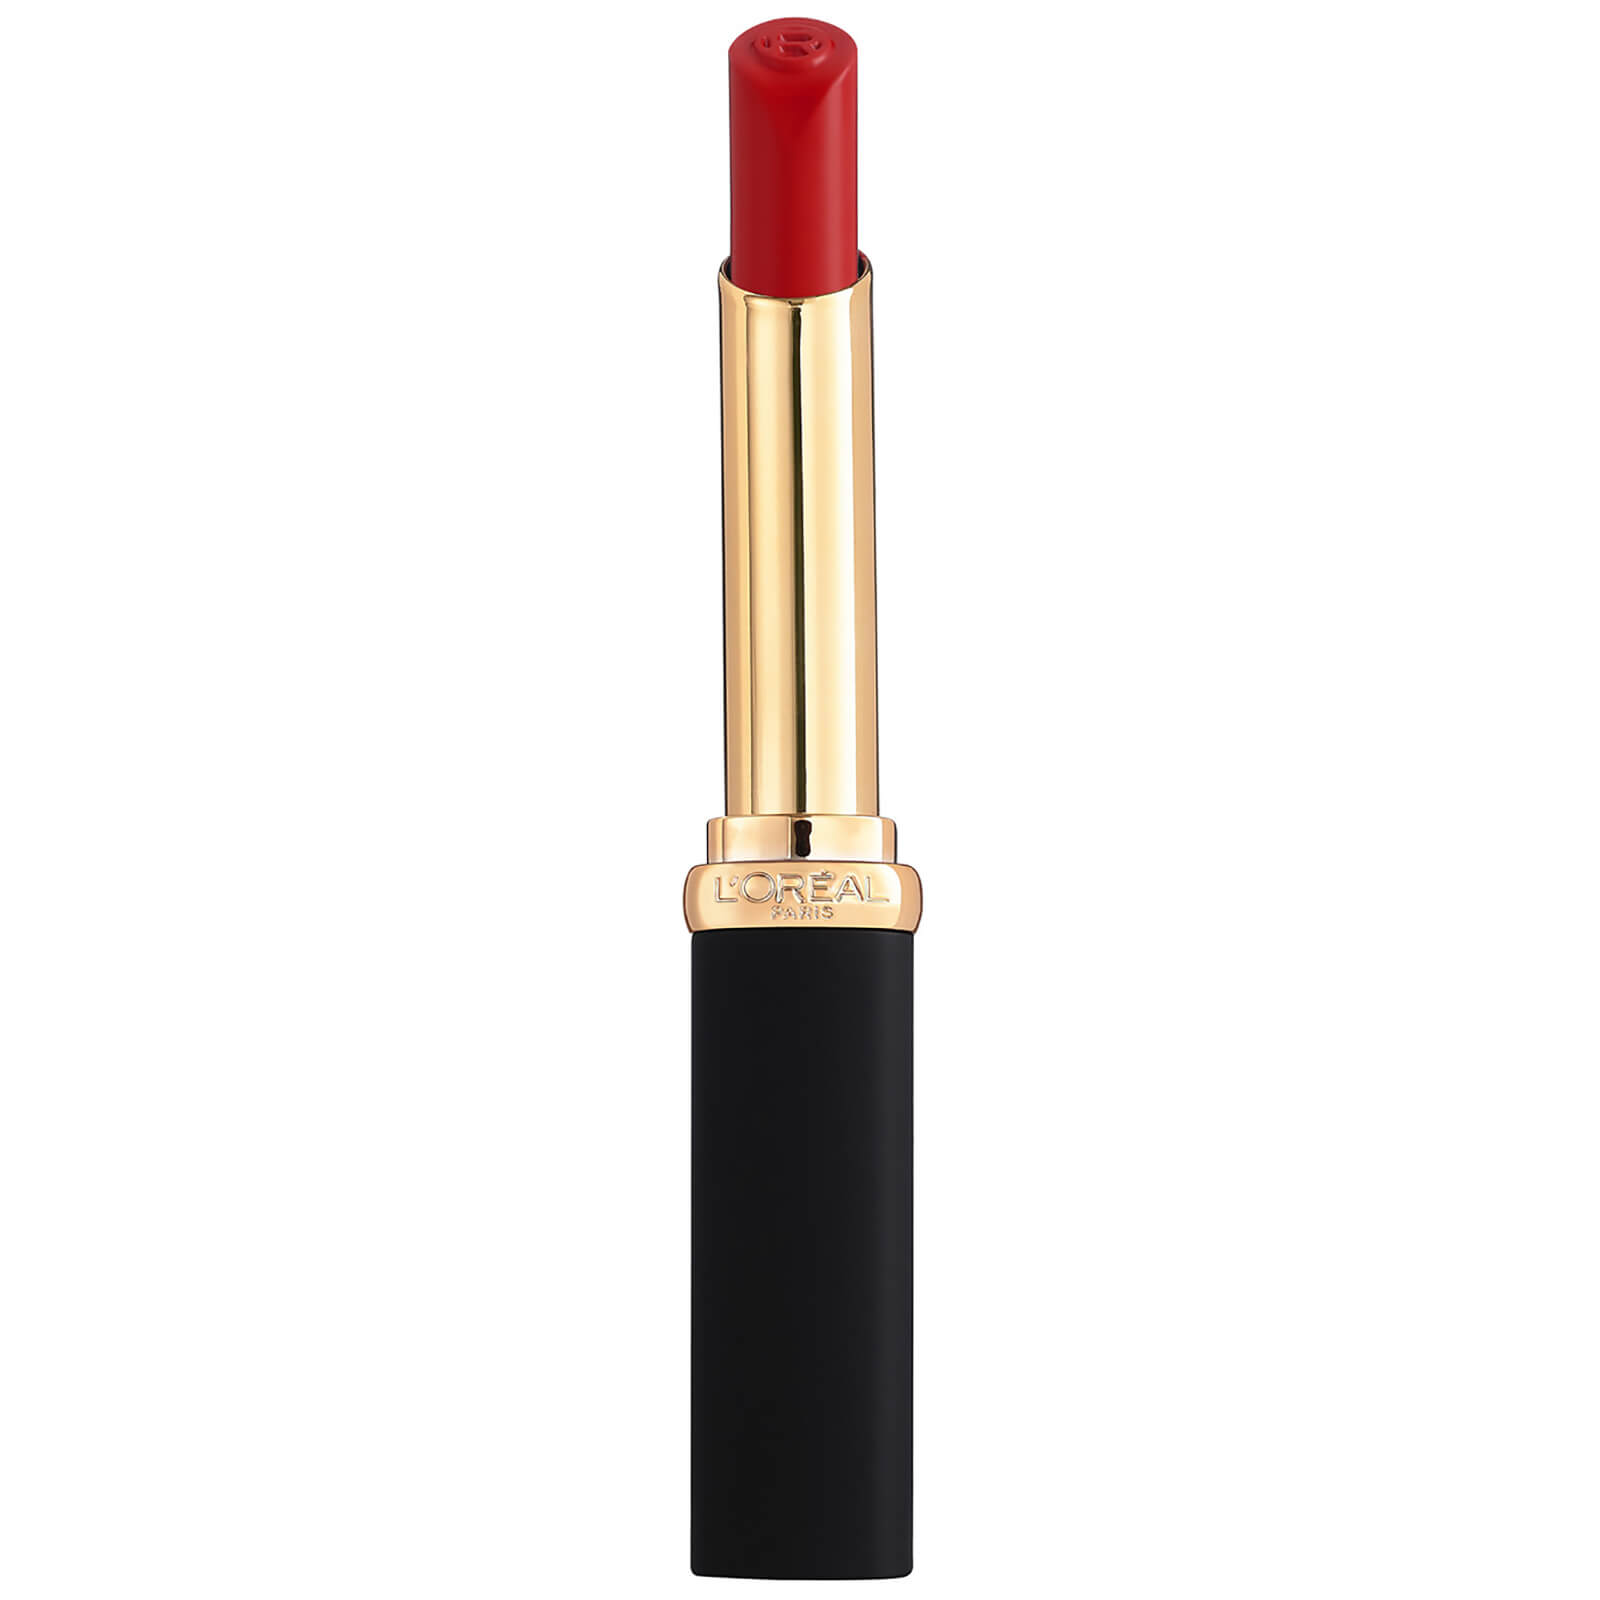 L'Oreal Paris Colour Riche Intense Volume Matte Lipstick 25g (Various Shades) - Rouge Avant-Garde